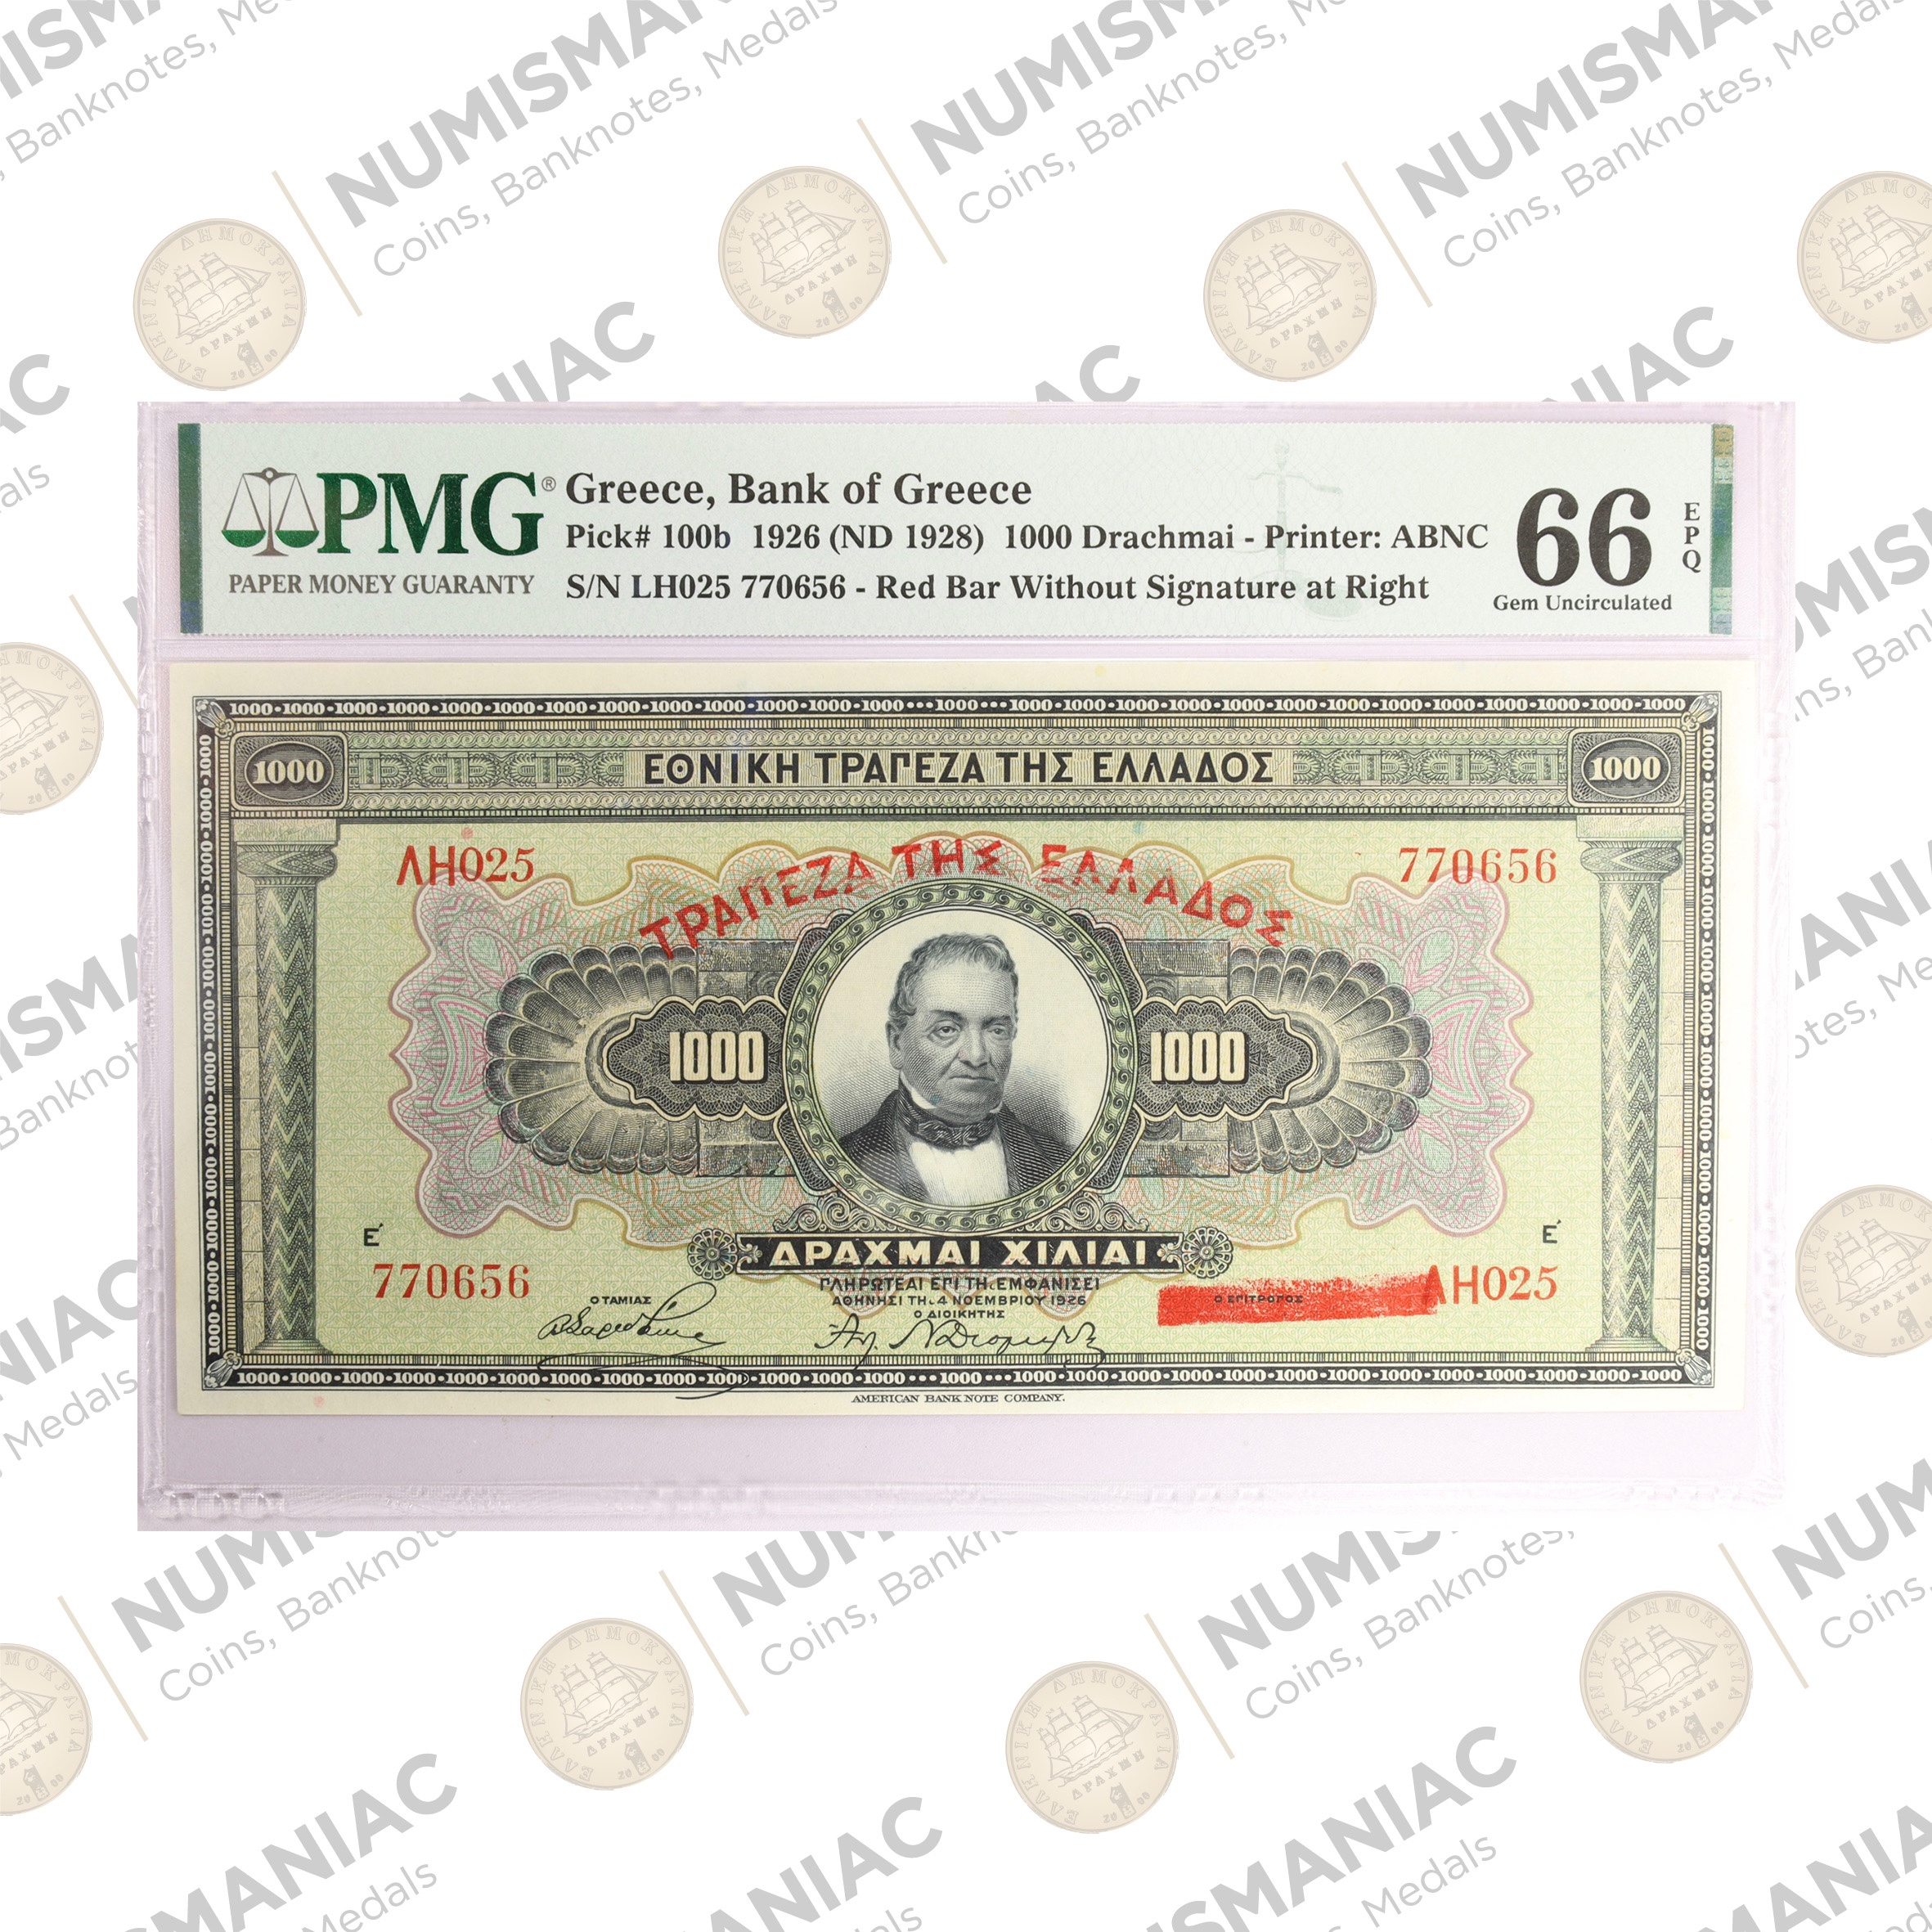 Greece 🇬🇷 1926 (ND1928) 1000 Drachmai Banknote Pick#100b PMG 66 EPQ b